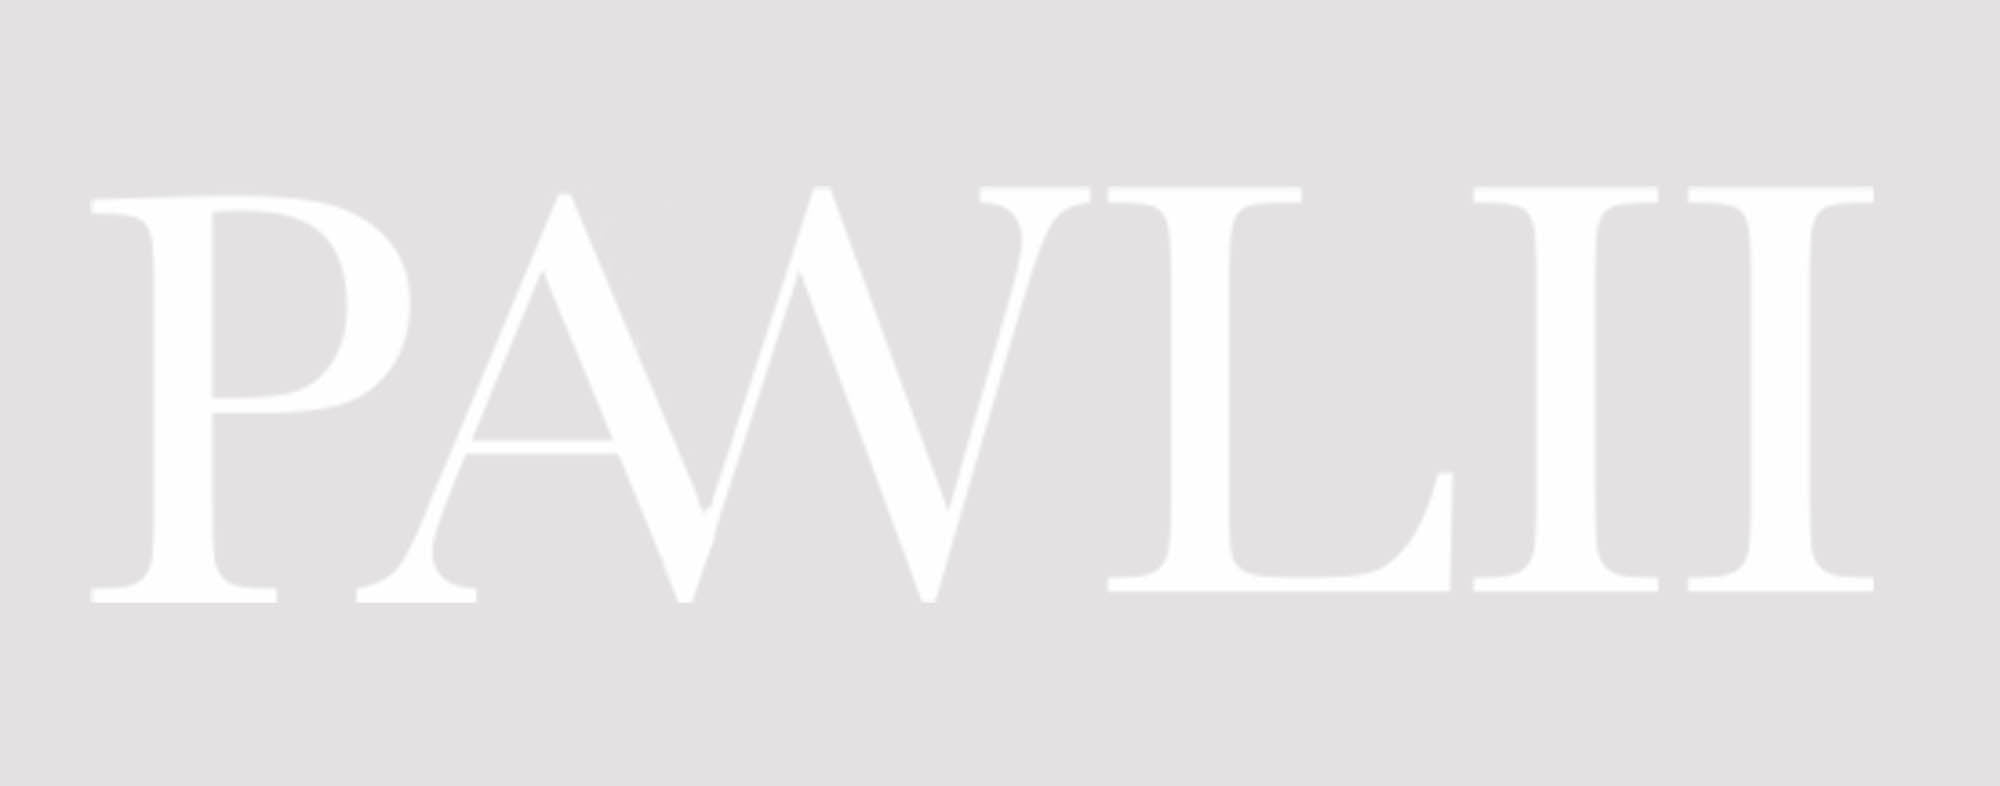 PAWLII brand logos greyscale